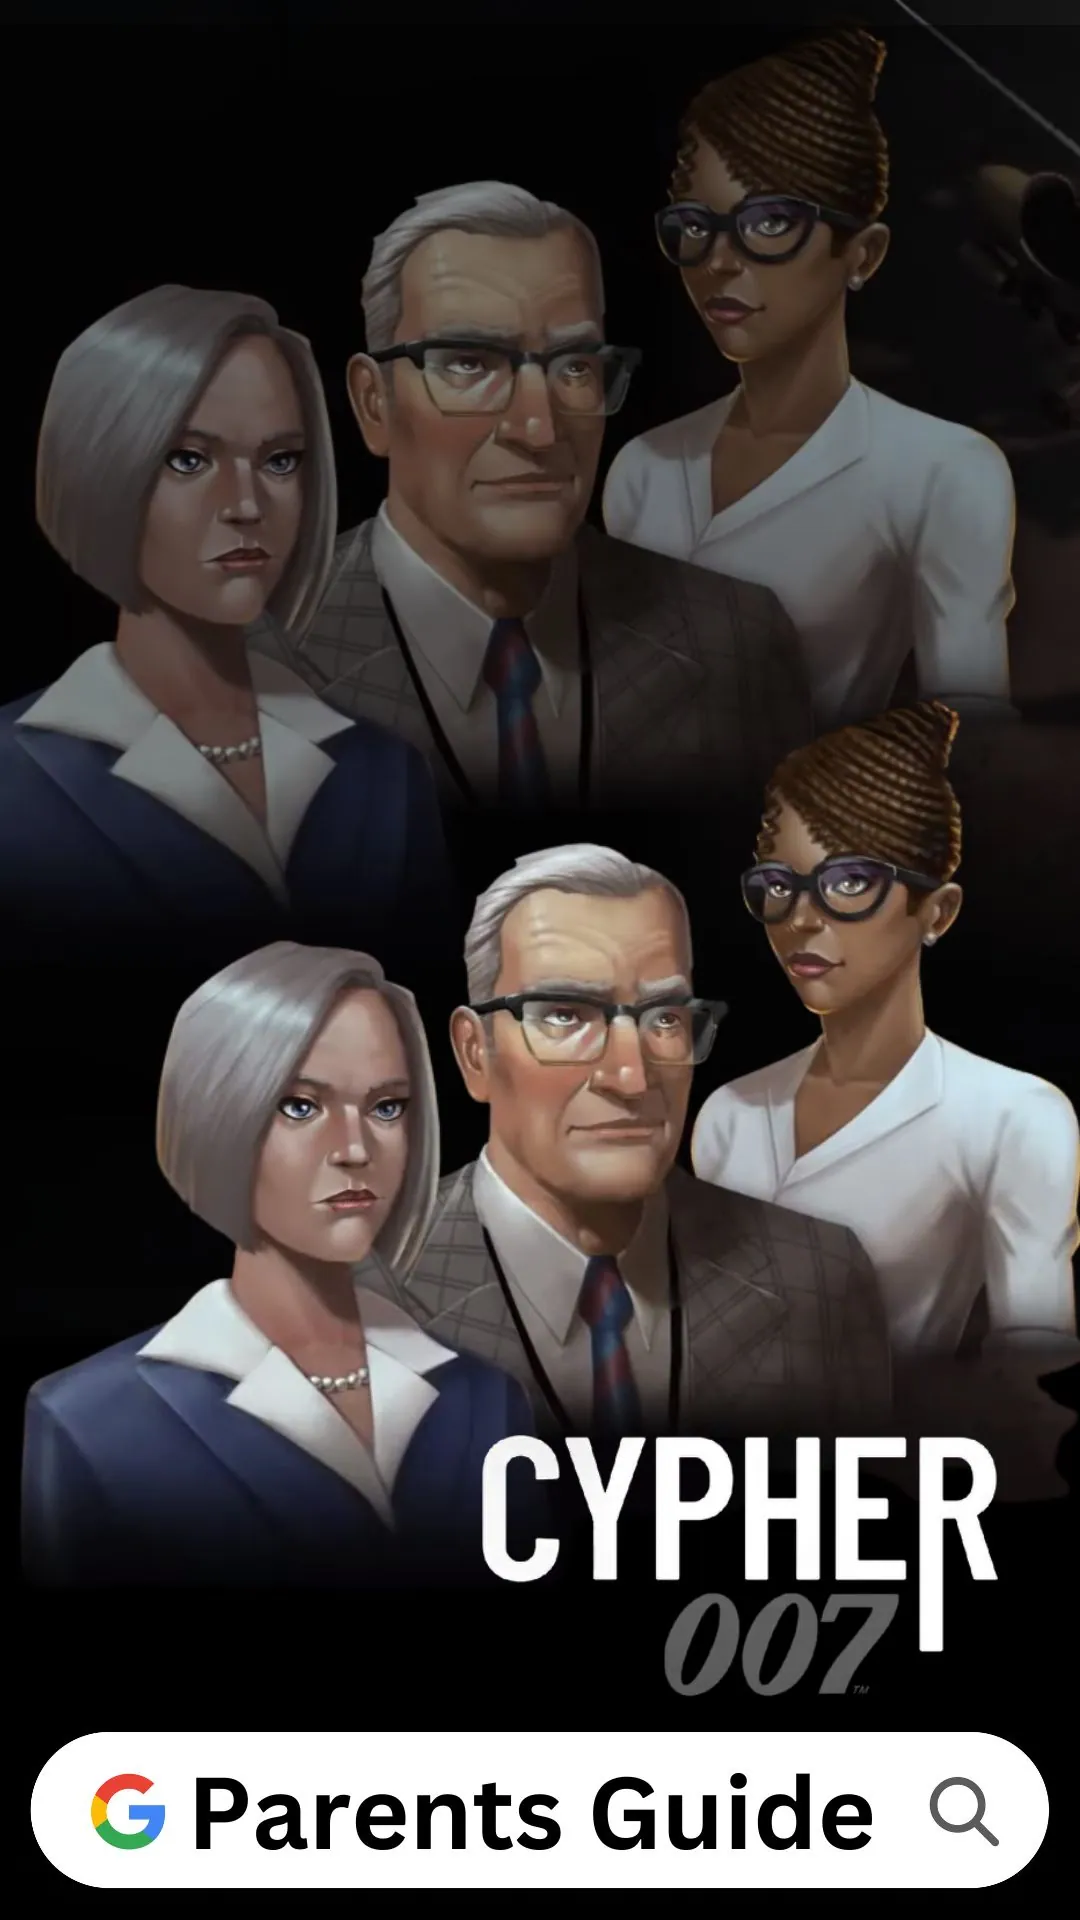 Cypher 007 Parents Guide